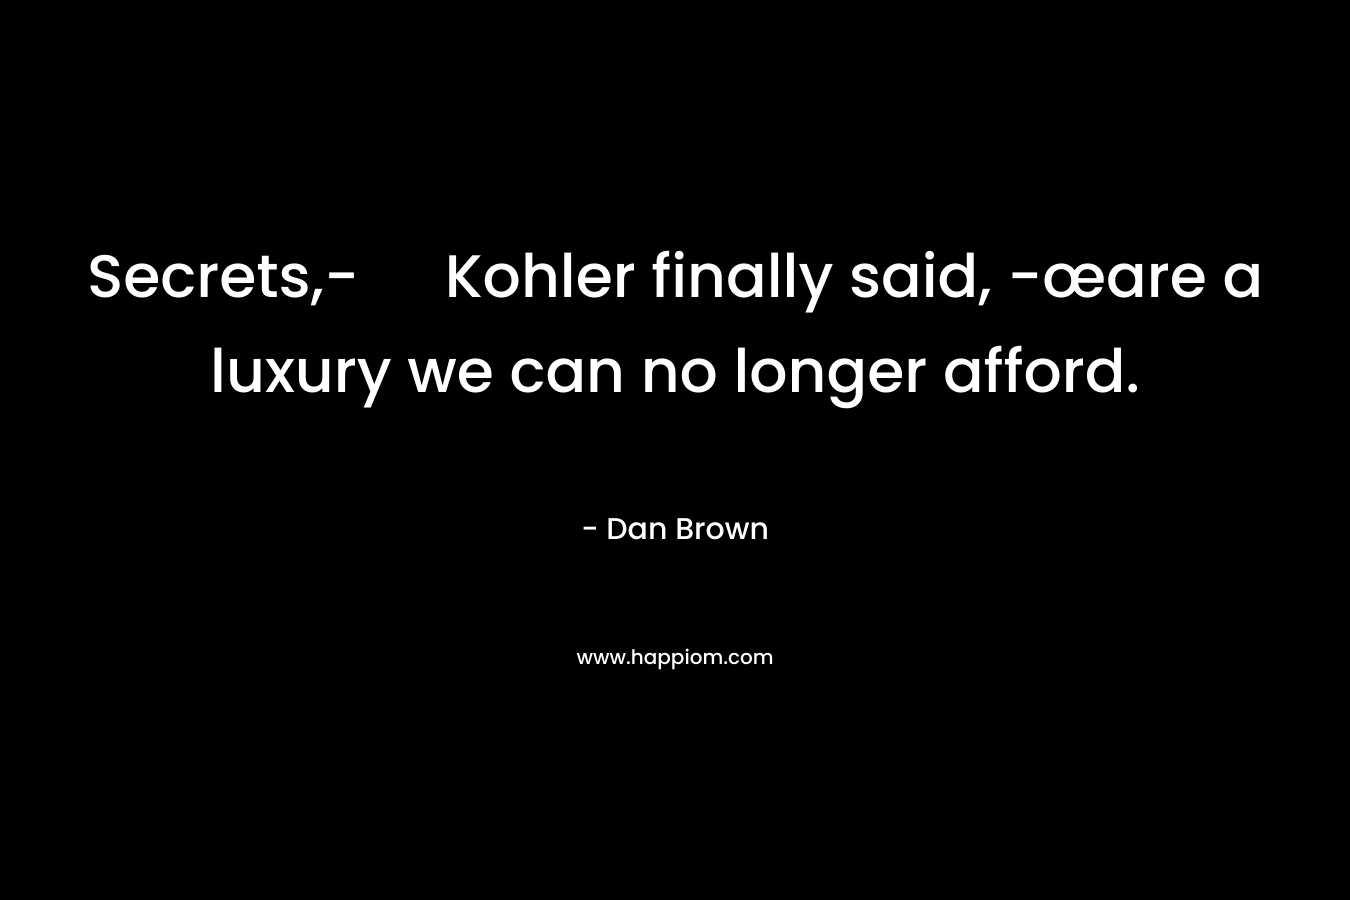 Secrets,- Kohler finally said, -œare a luxury we can no longer afford. – Dan Brown